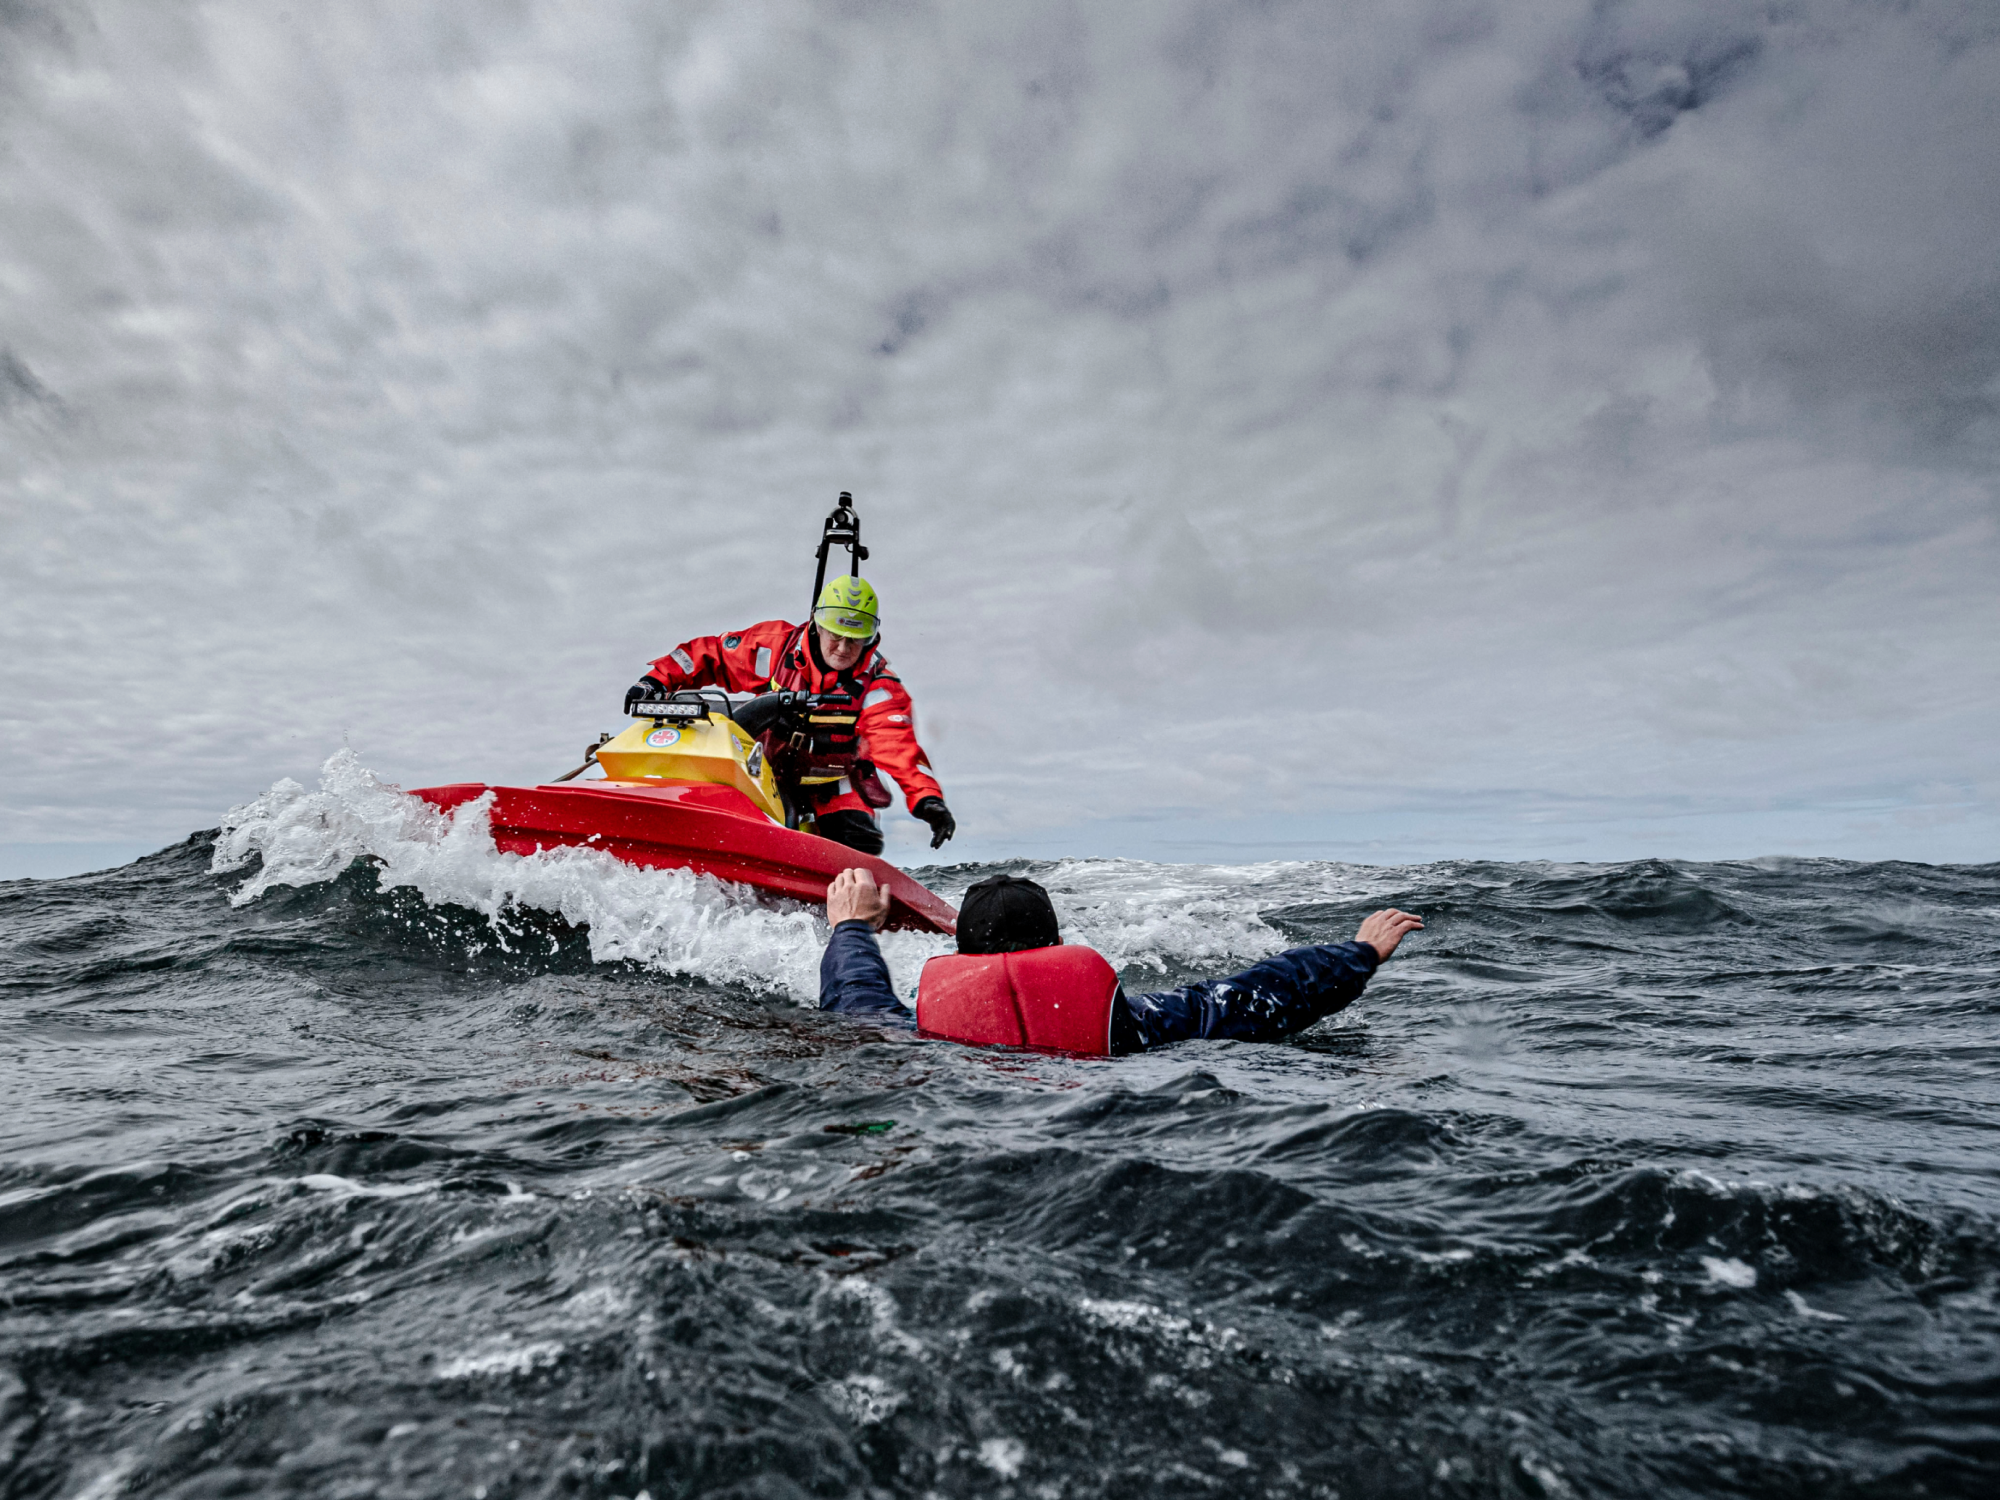 En livräddare från Sjöräddningssällskapet räddar en person i vattnet